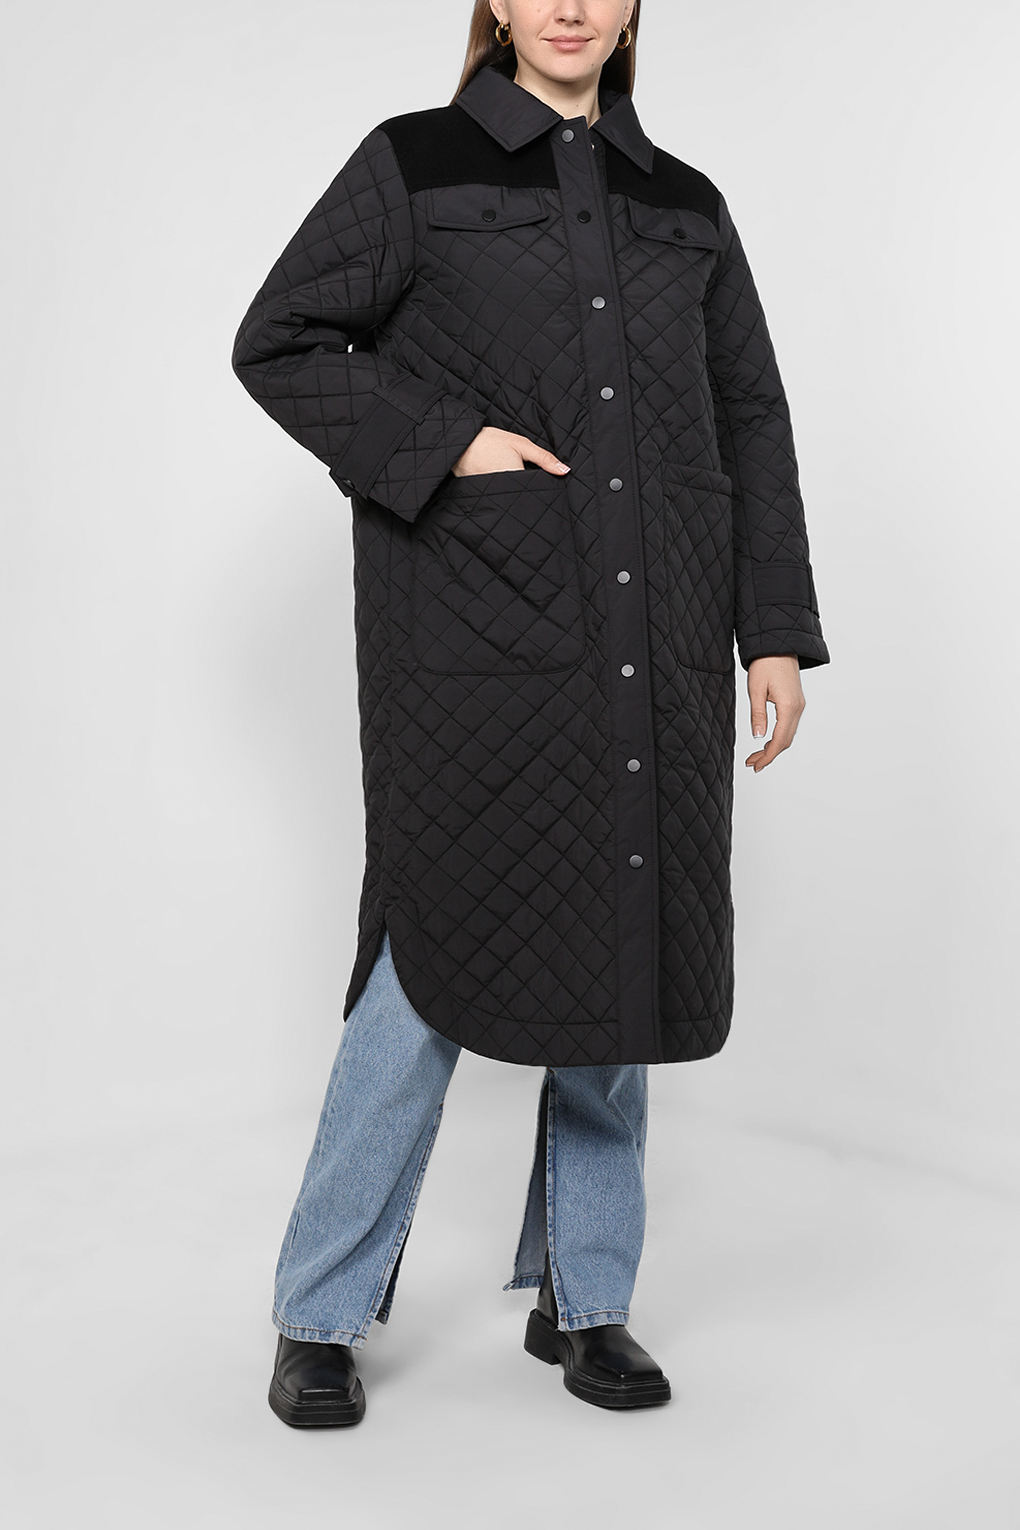 Куртка женская Esprit Collection 082EO1G382 черная 2XL